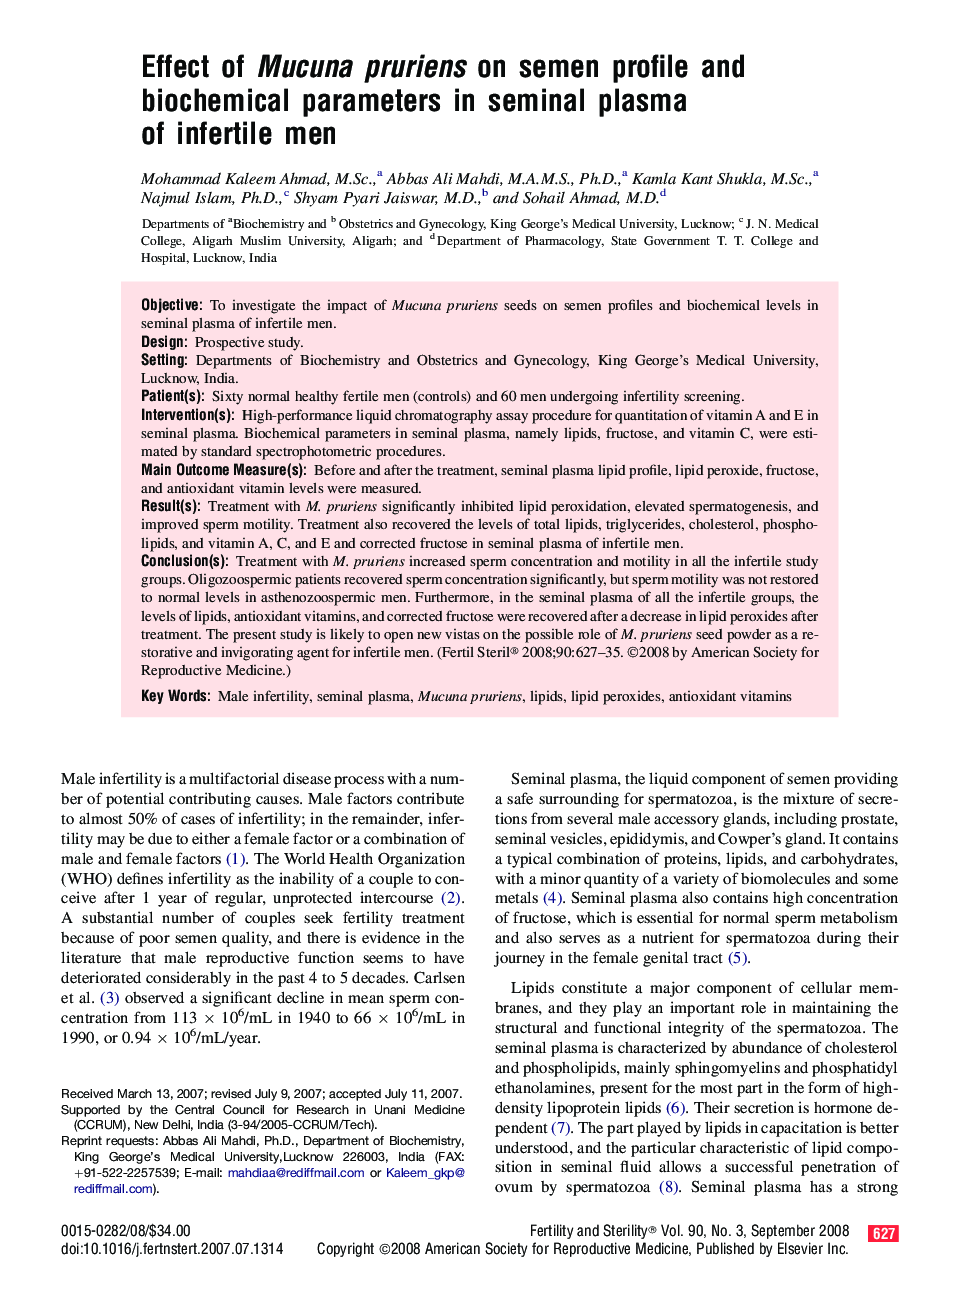 Effect of Mucuna pruriens on semen profile and biochemical parameters in seminal plasma of infertile men 